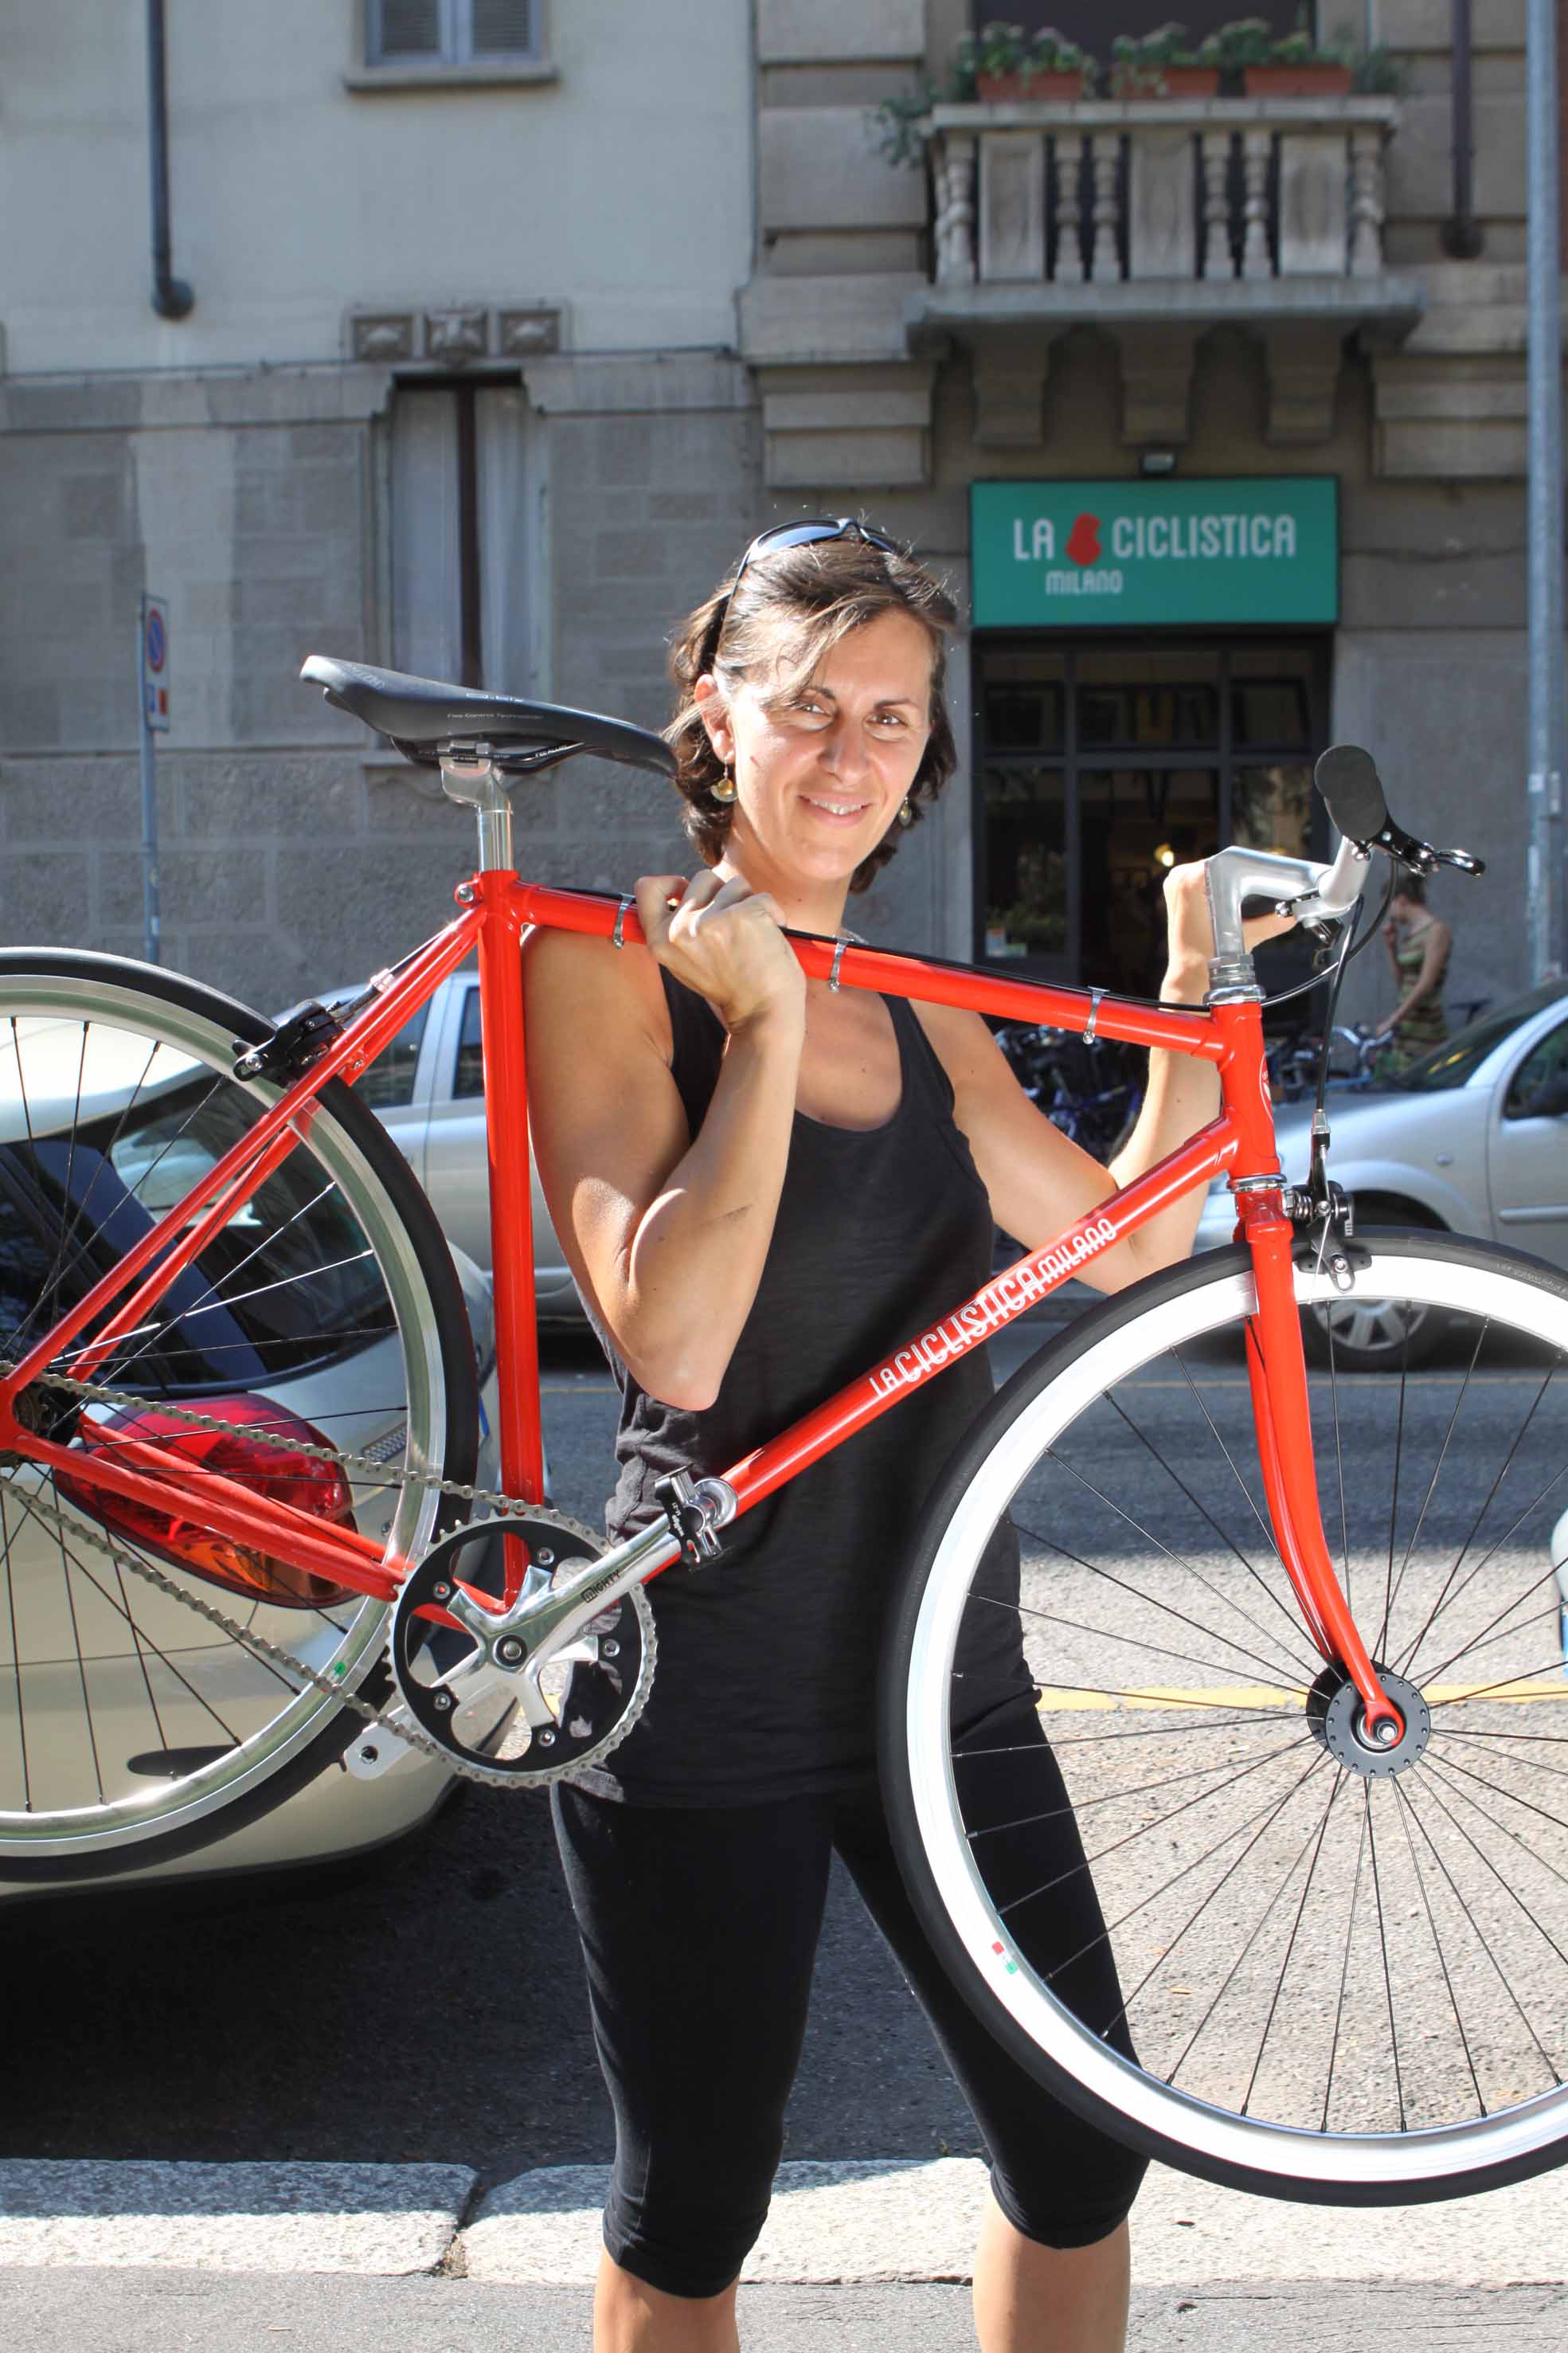  Da Milano alla Puglia in bici: per scoprire un’Italia diversa